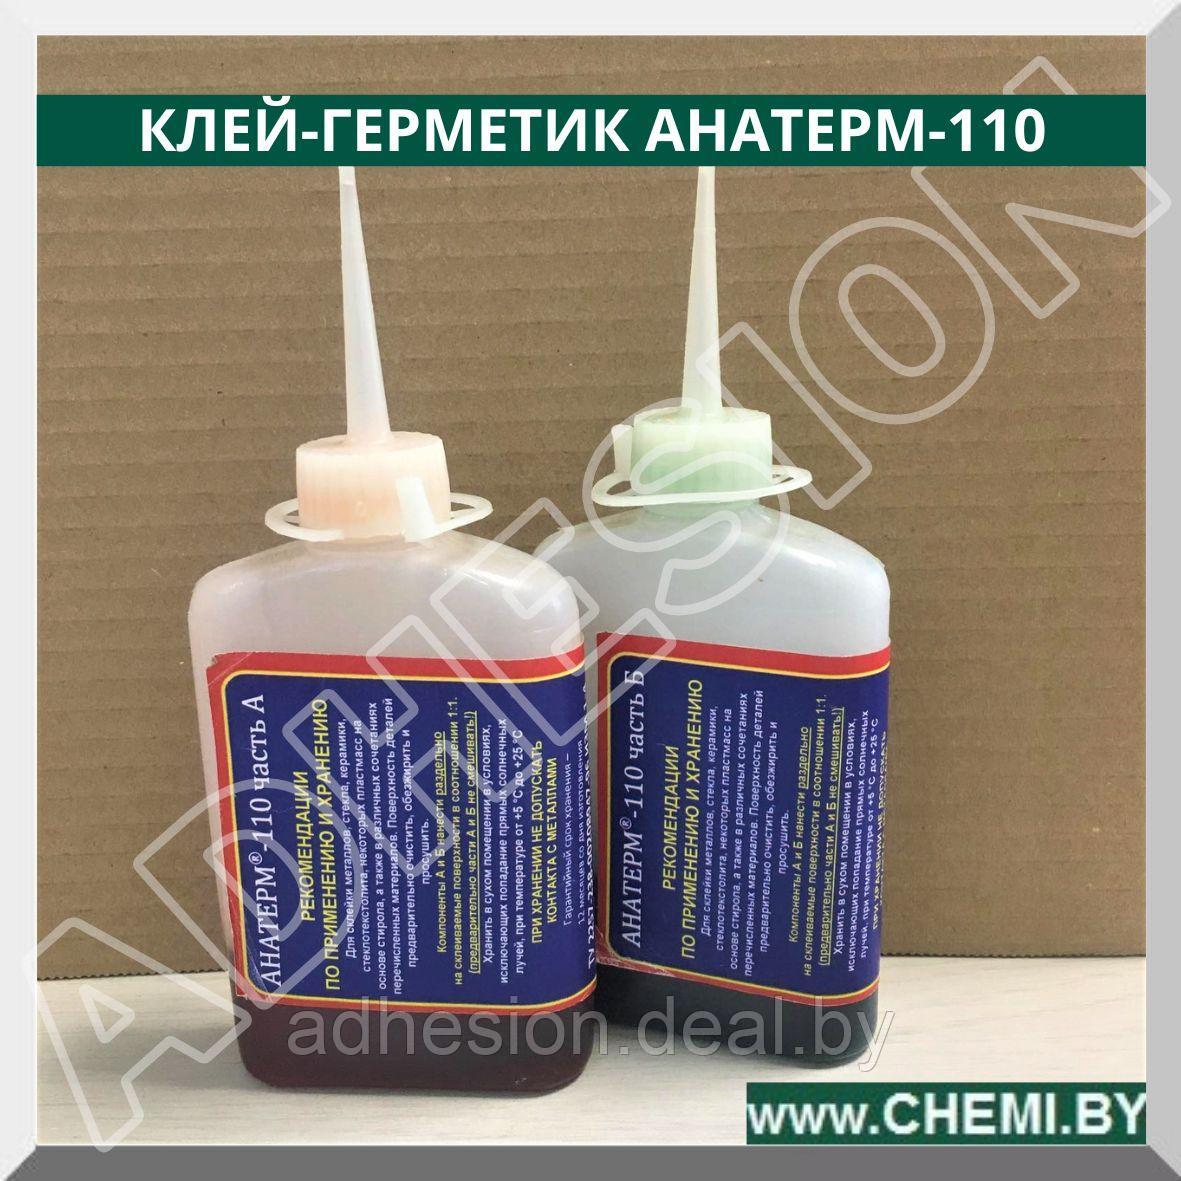 Клей-герметик Анатерм-110